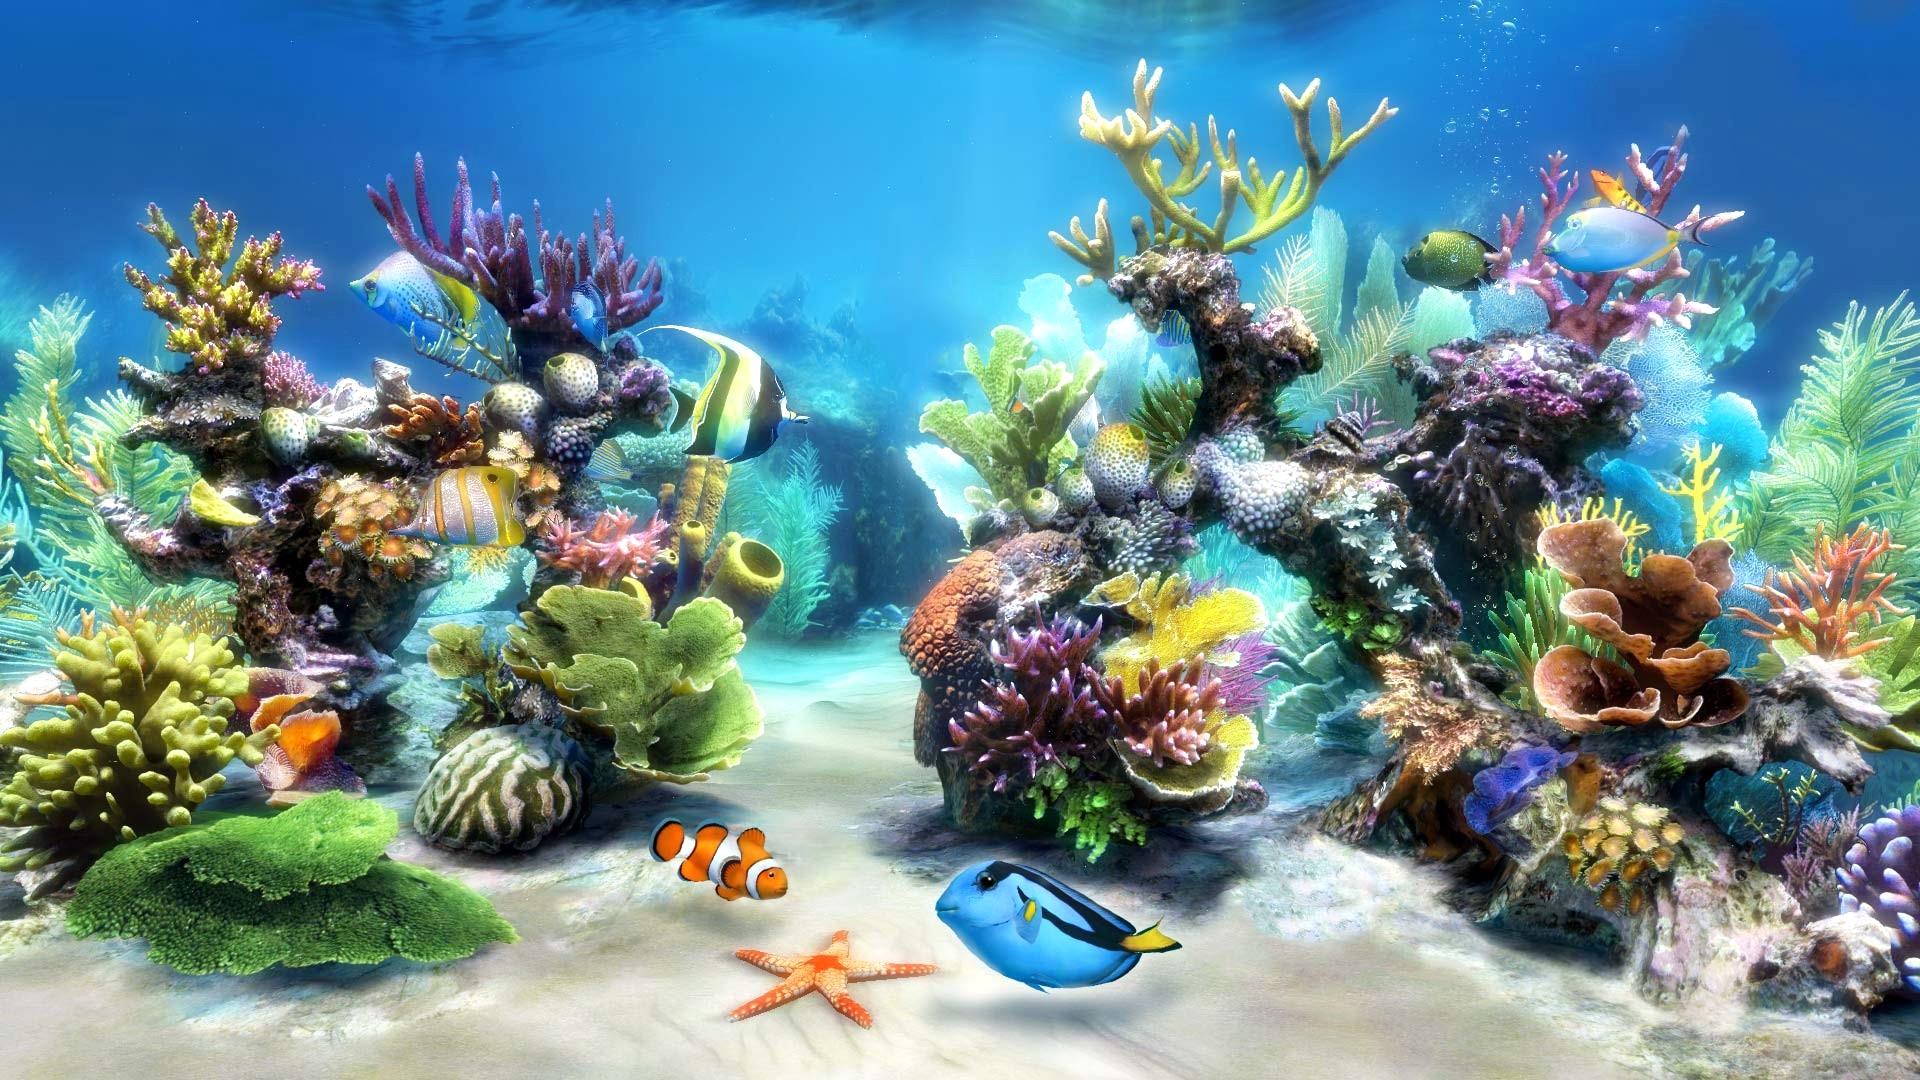 라이브 벽지 hd,해양 생물학,암초,산호초,산호초 물고기,수중